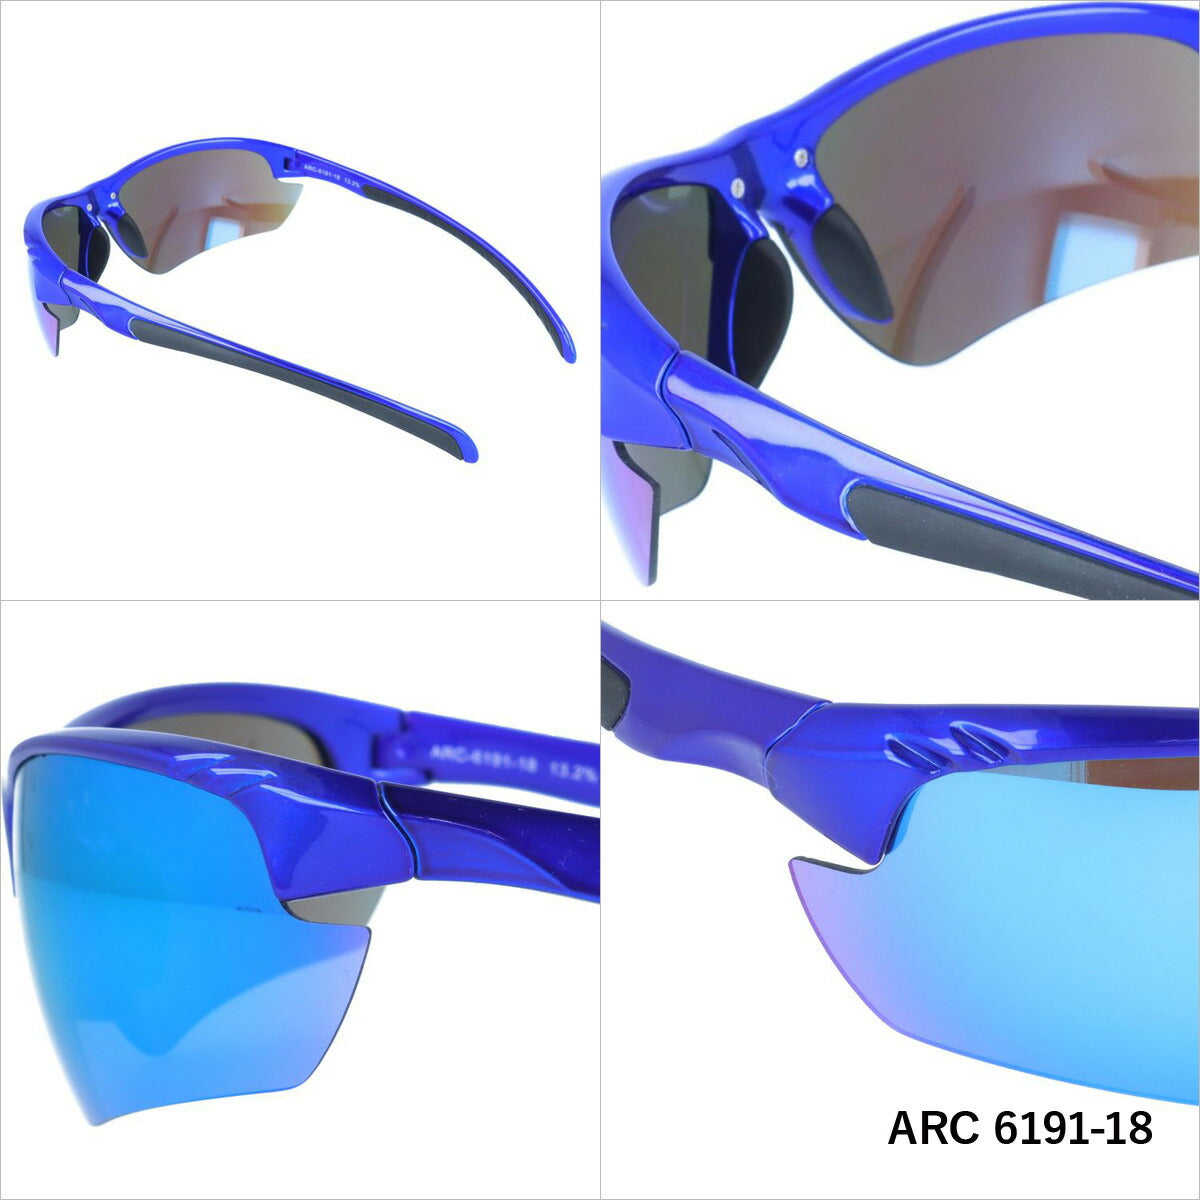 アークスタイル サングラス ミラーレンズ アジアンフィット ARC Style ARC 6191 全2カラー 80サイズ スポーツ メンズ レディース 紫外線対策 UVカット おしゃれ プレゼント ギフト